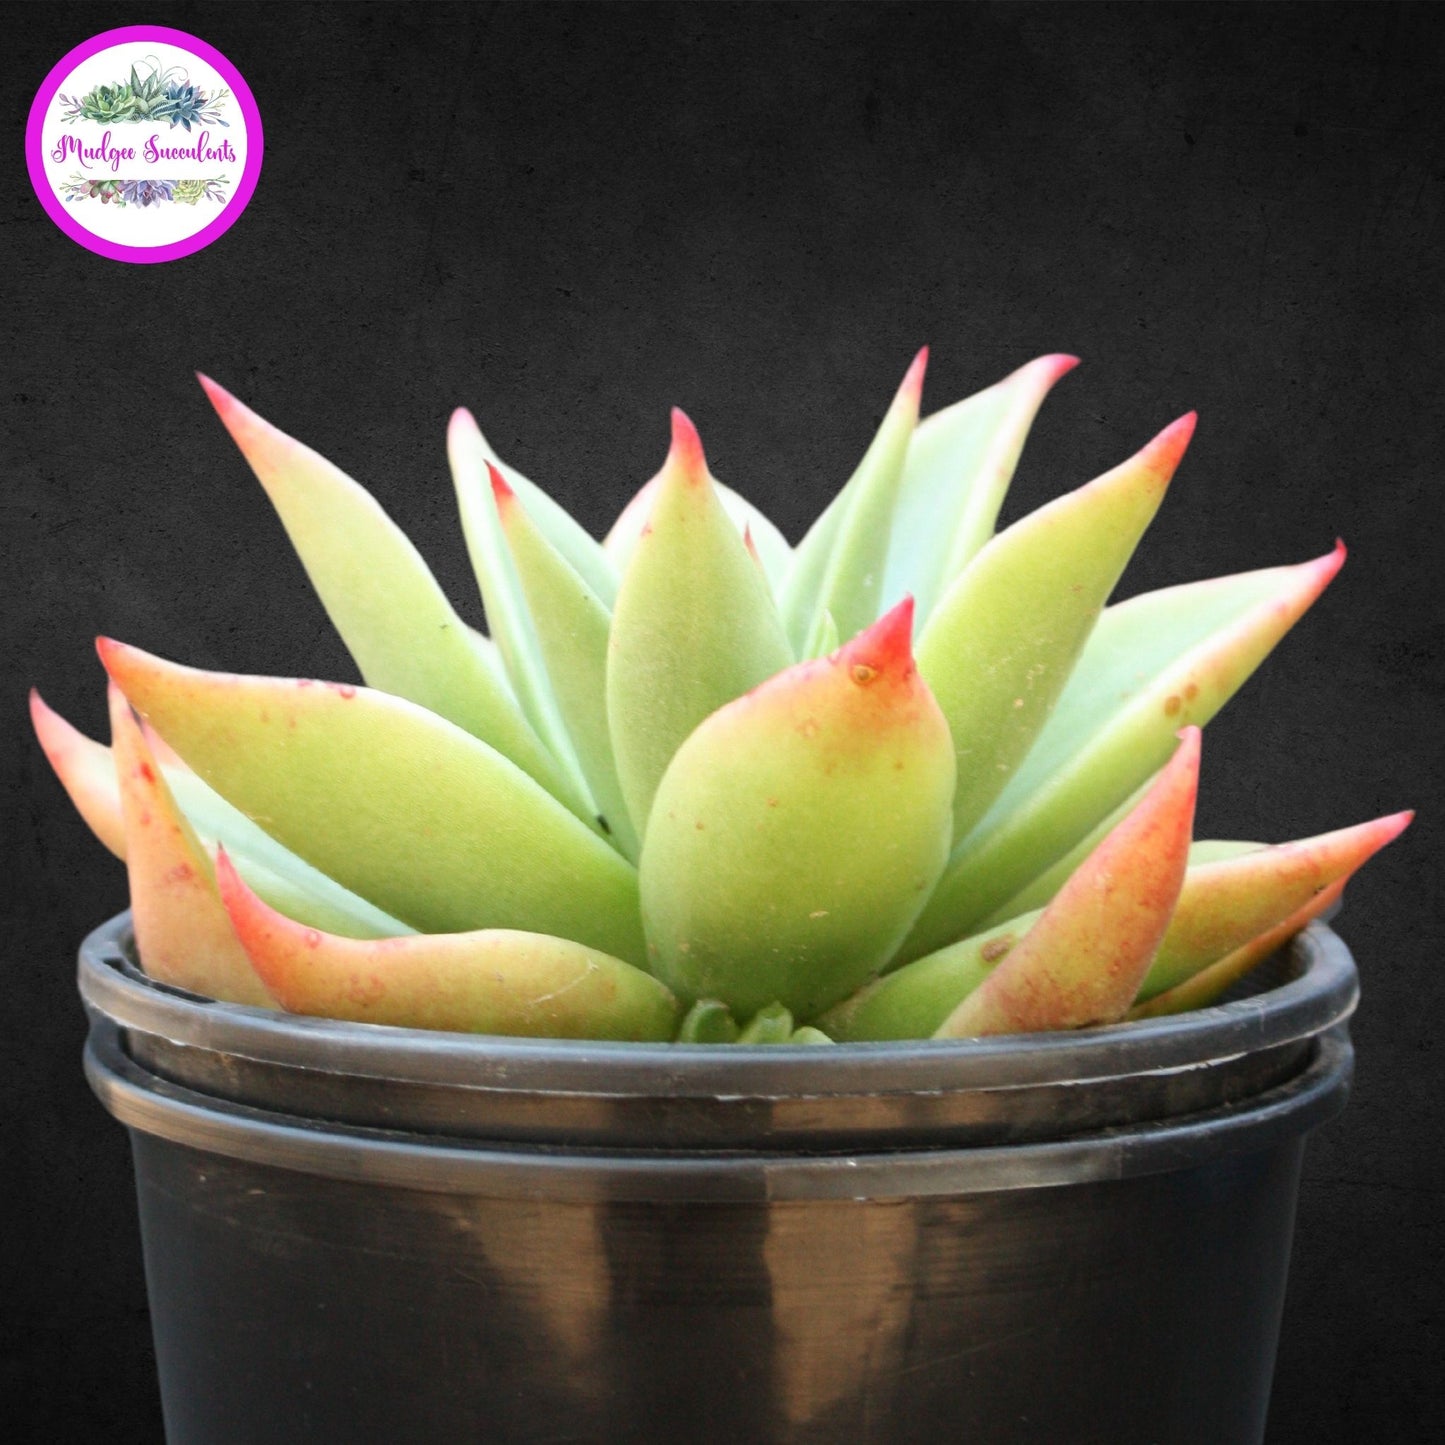 Succulent Plant - Echeveria 'Martin' - Mudgee Succulents Online Shop